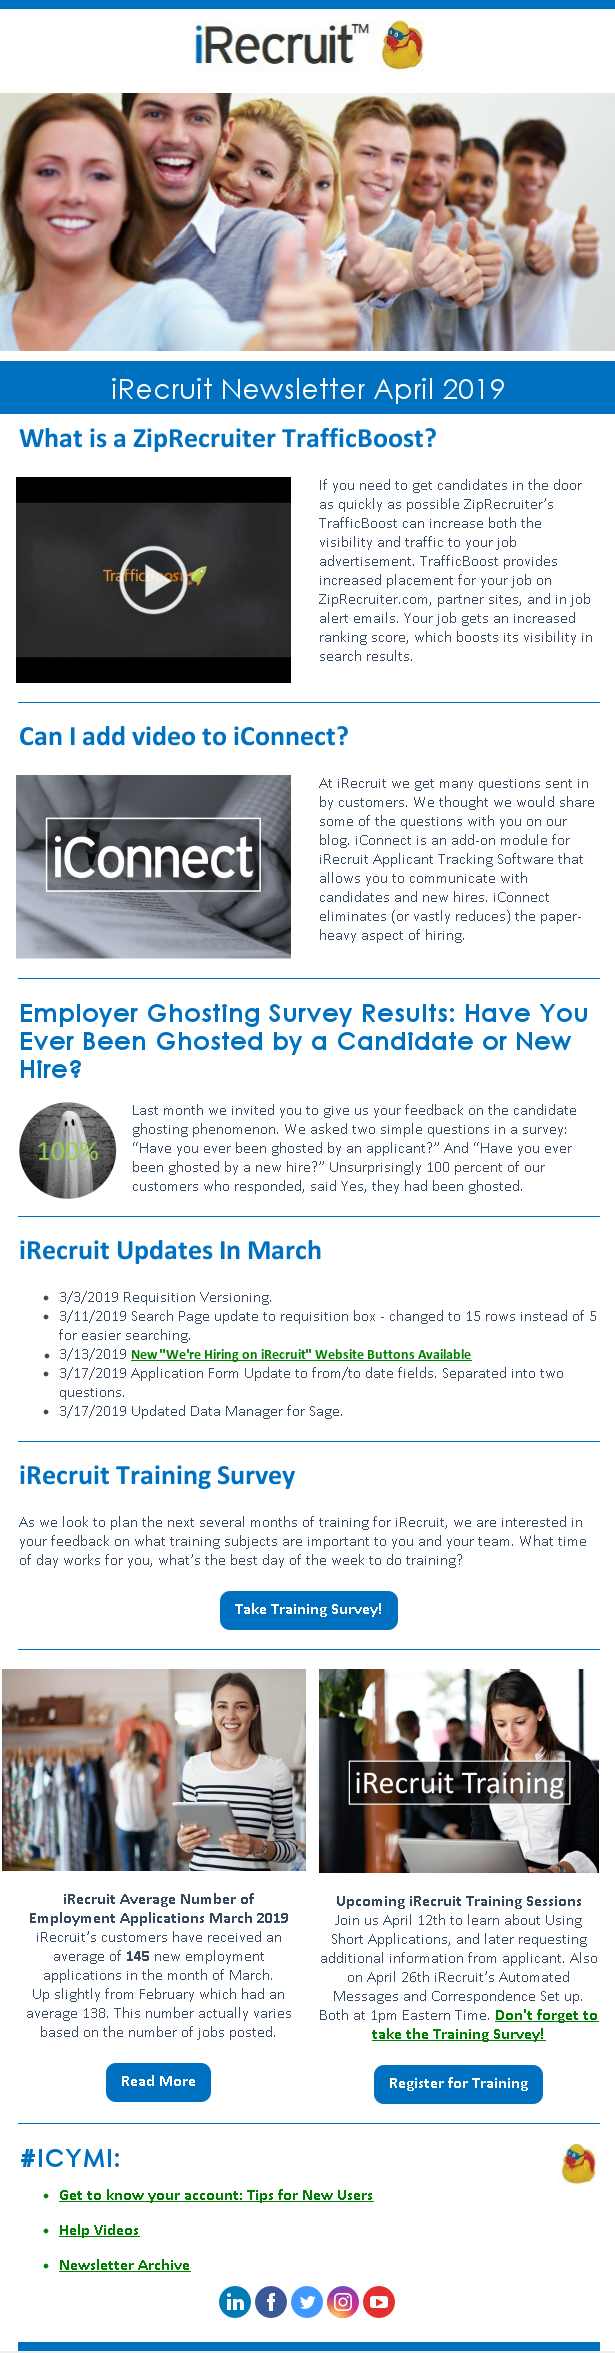 iRecruit Customer Newsletter April 2019